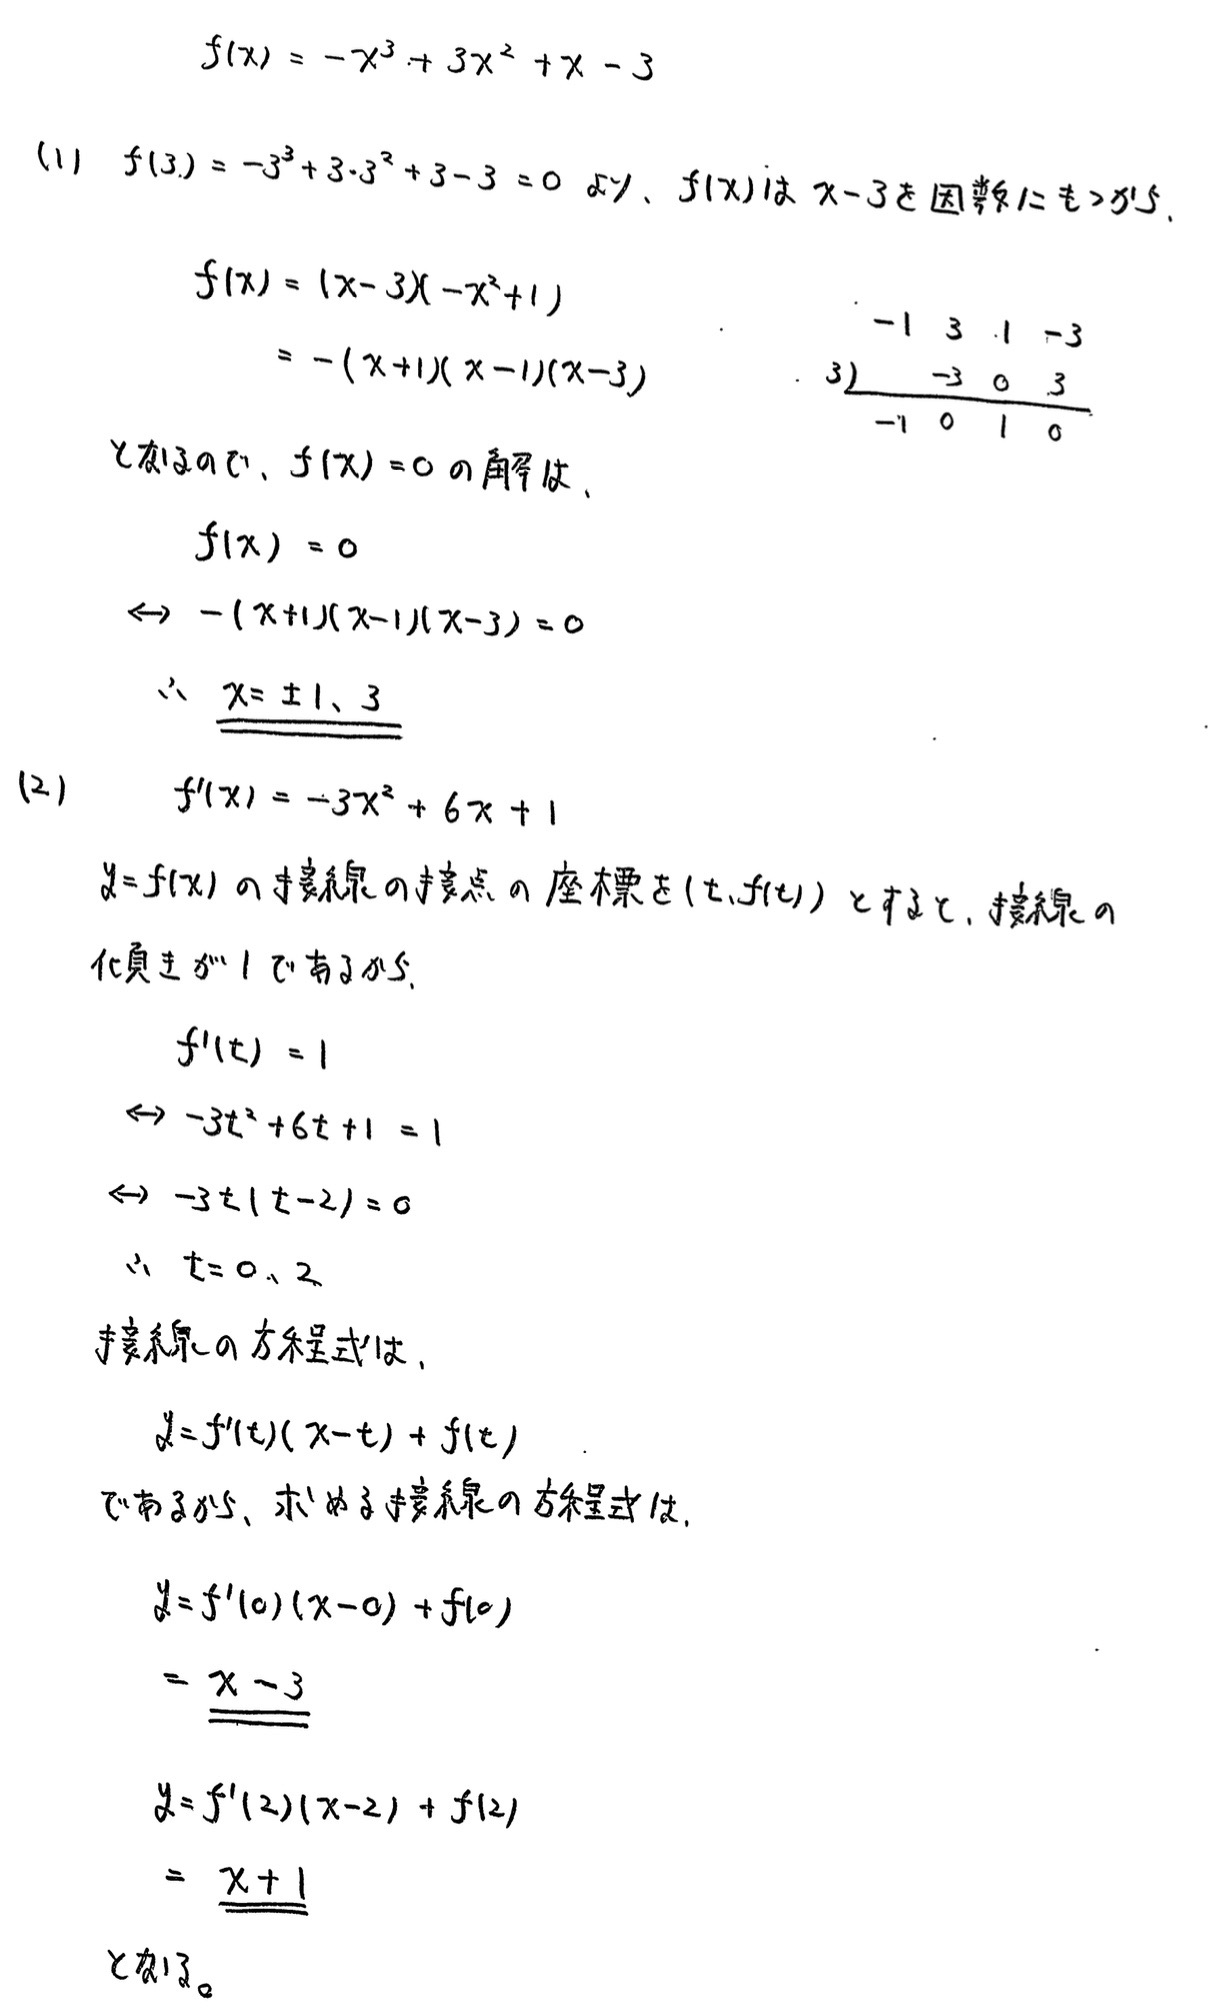 金沢大学入試文系数学2022年(令和4年)過去問題(解答・解説)